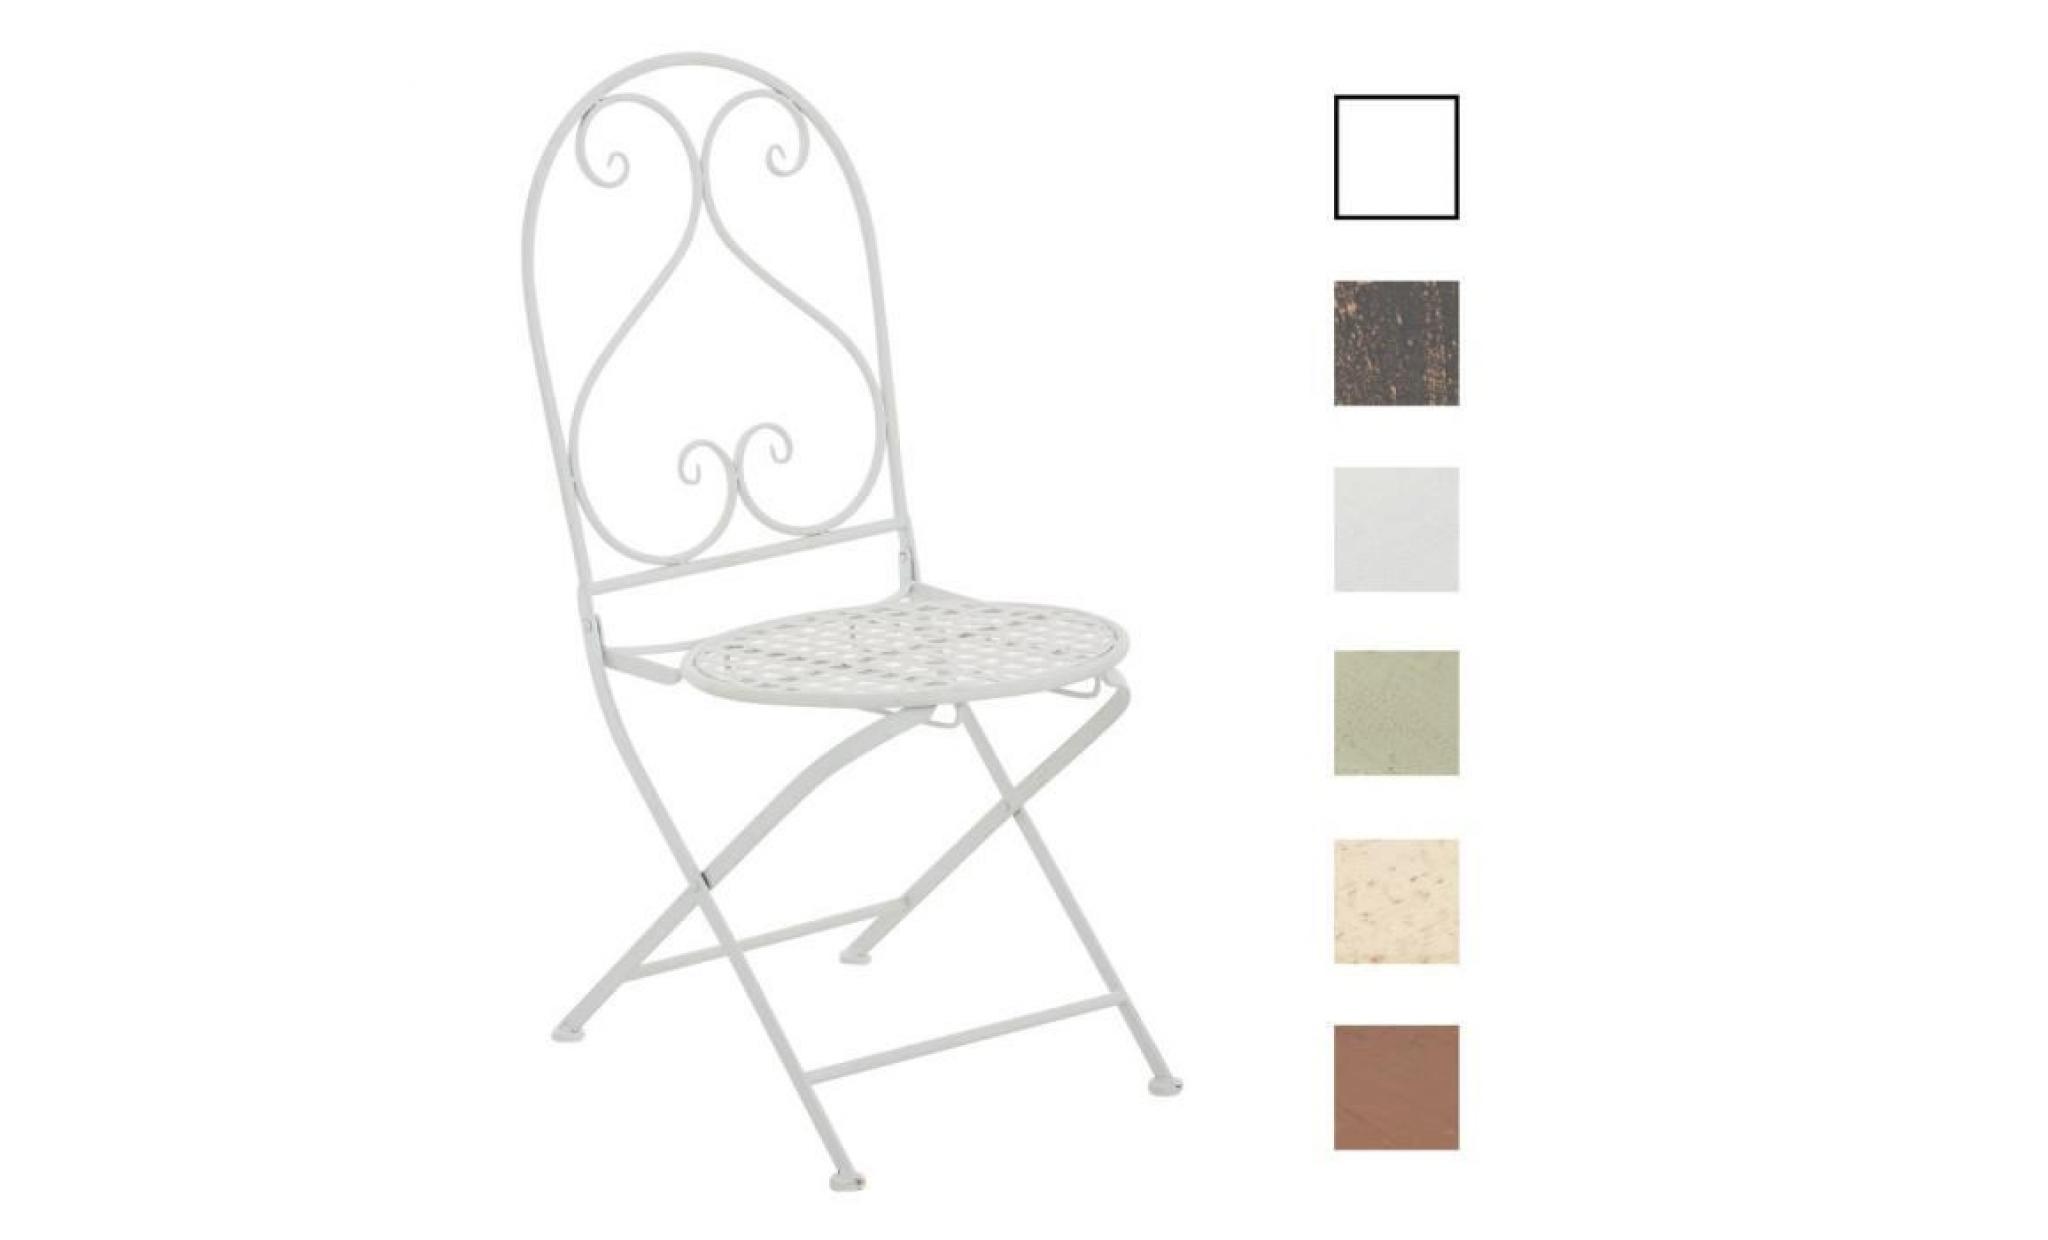 clp chaise nostalgique pliable vahan loraville, en fer forgé, chaise en fer style nostalgique, ultra élégant, 6 couleurs au choix